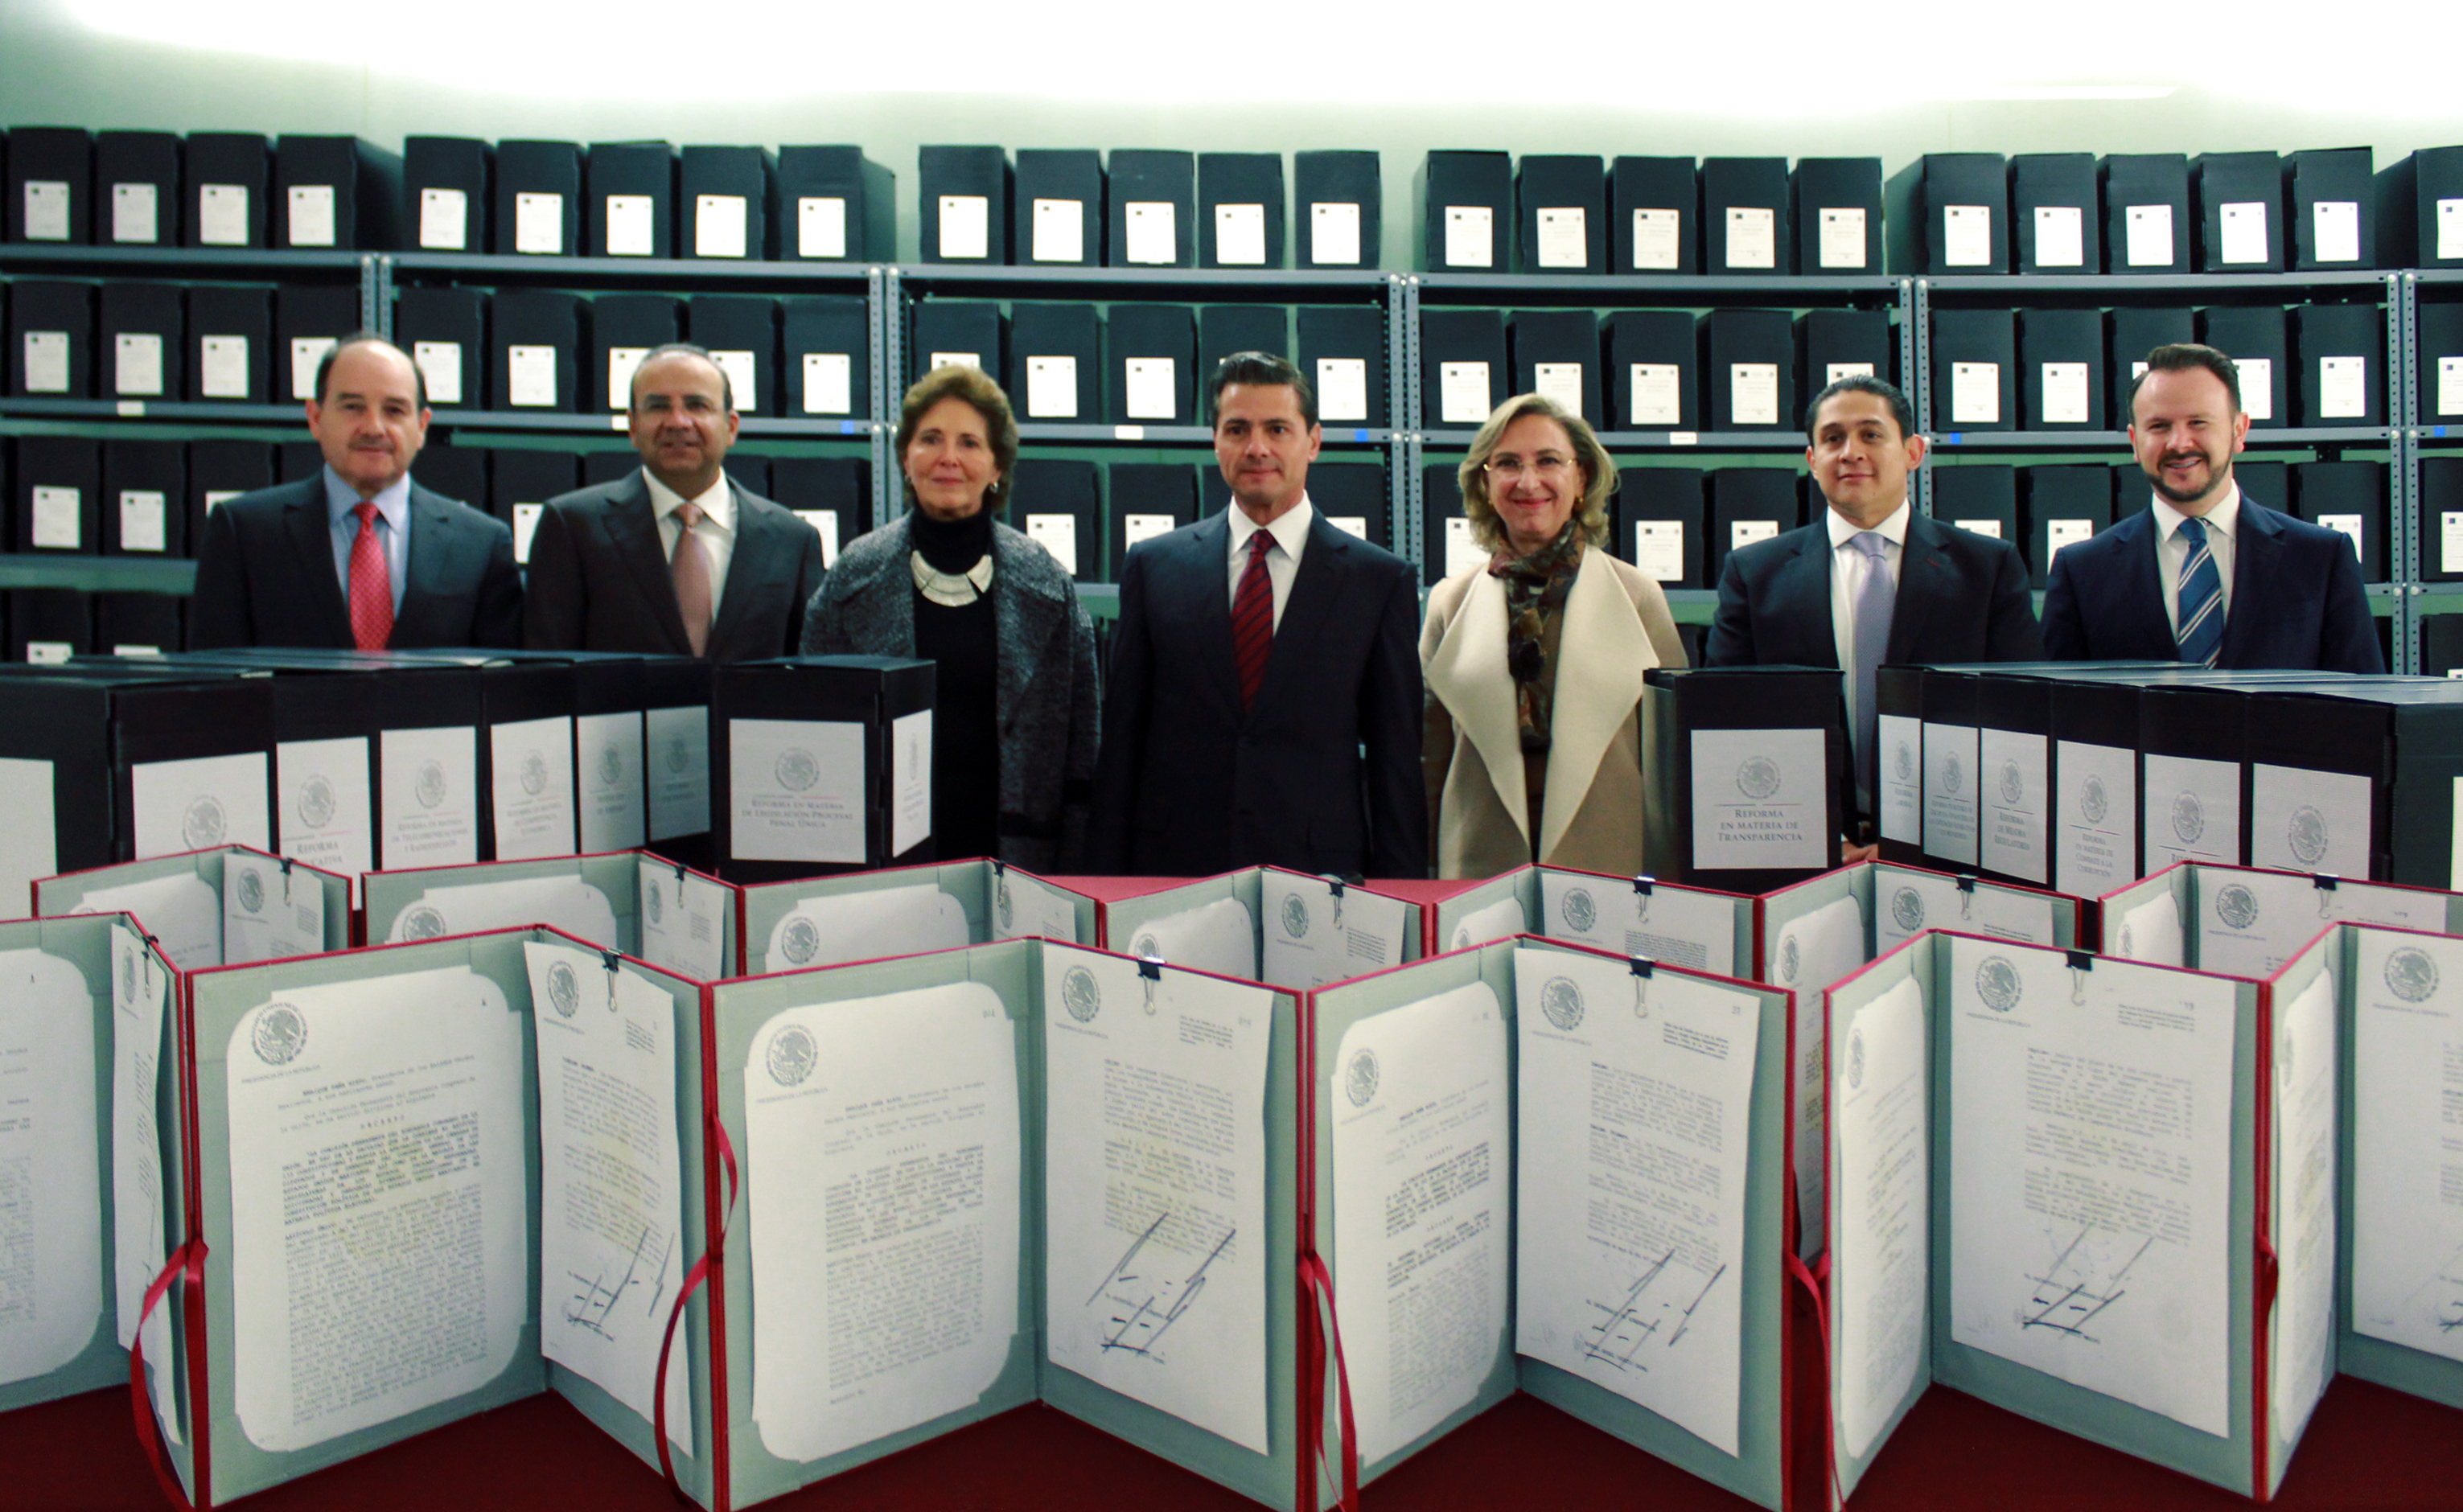 El Presidente entregó una parte de la memoria documental e informativa de su administración al Archivo General de la Nación.